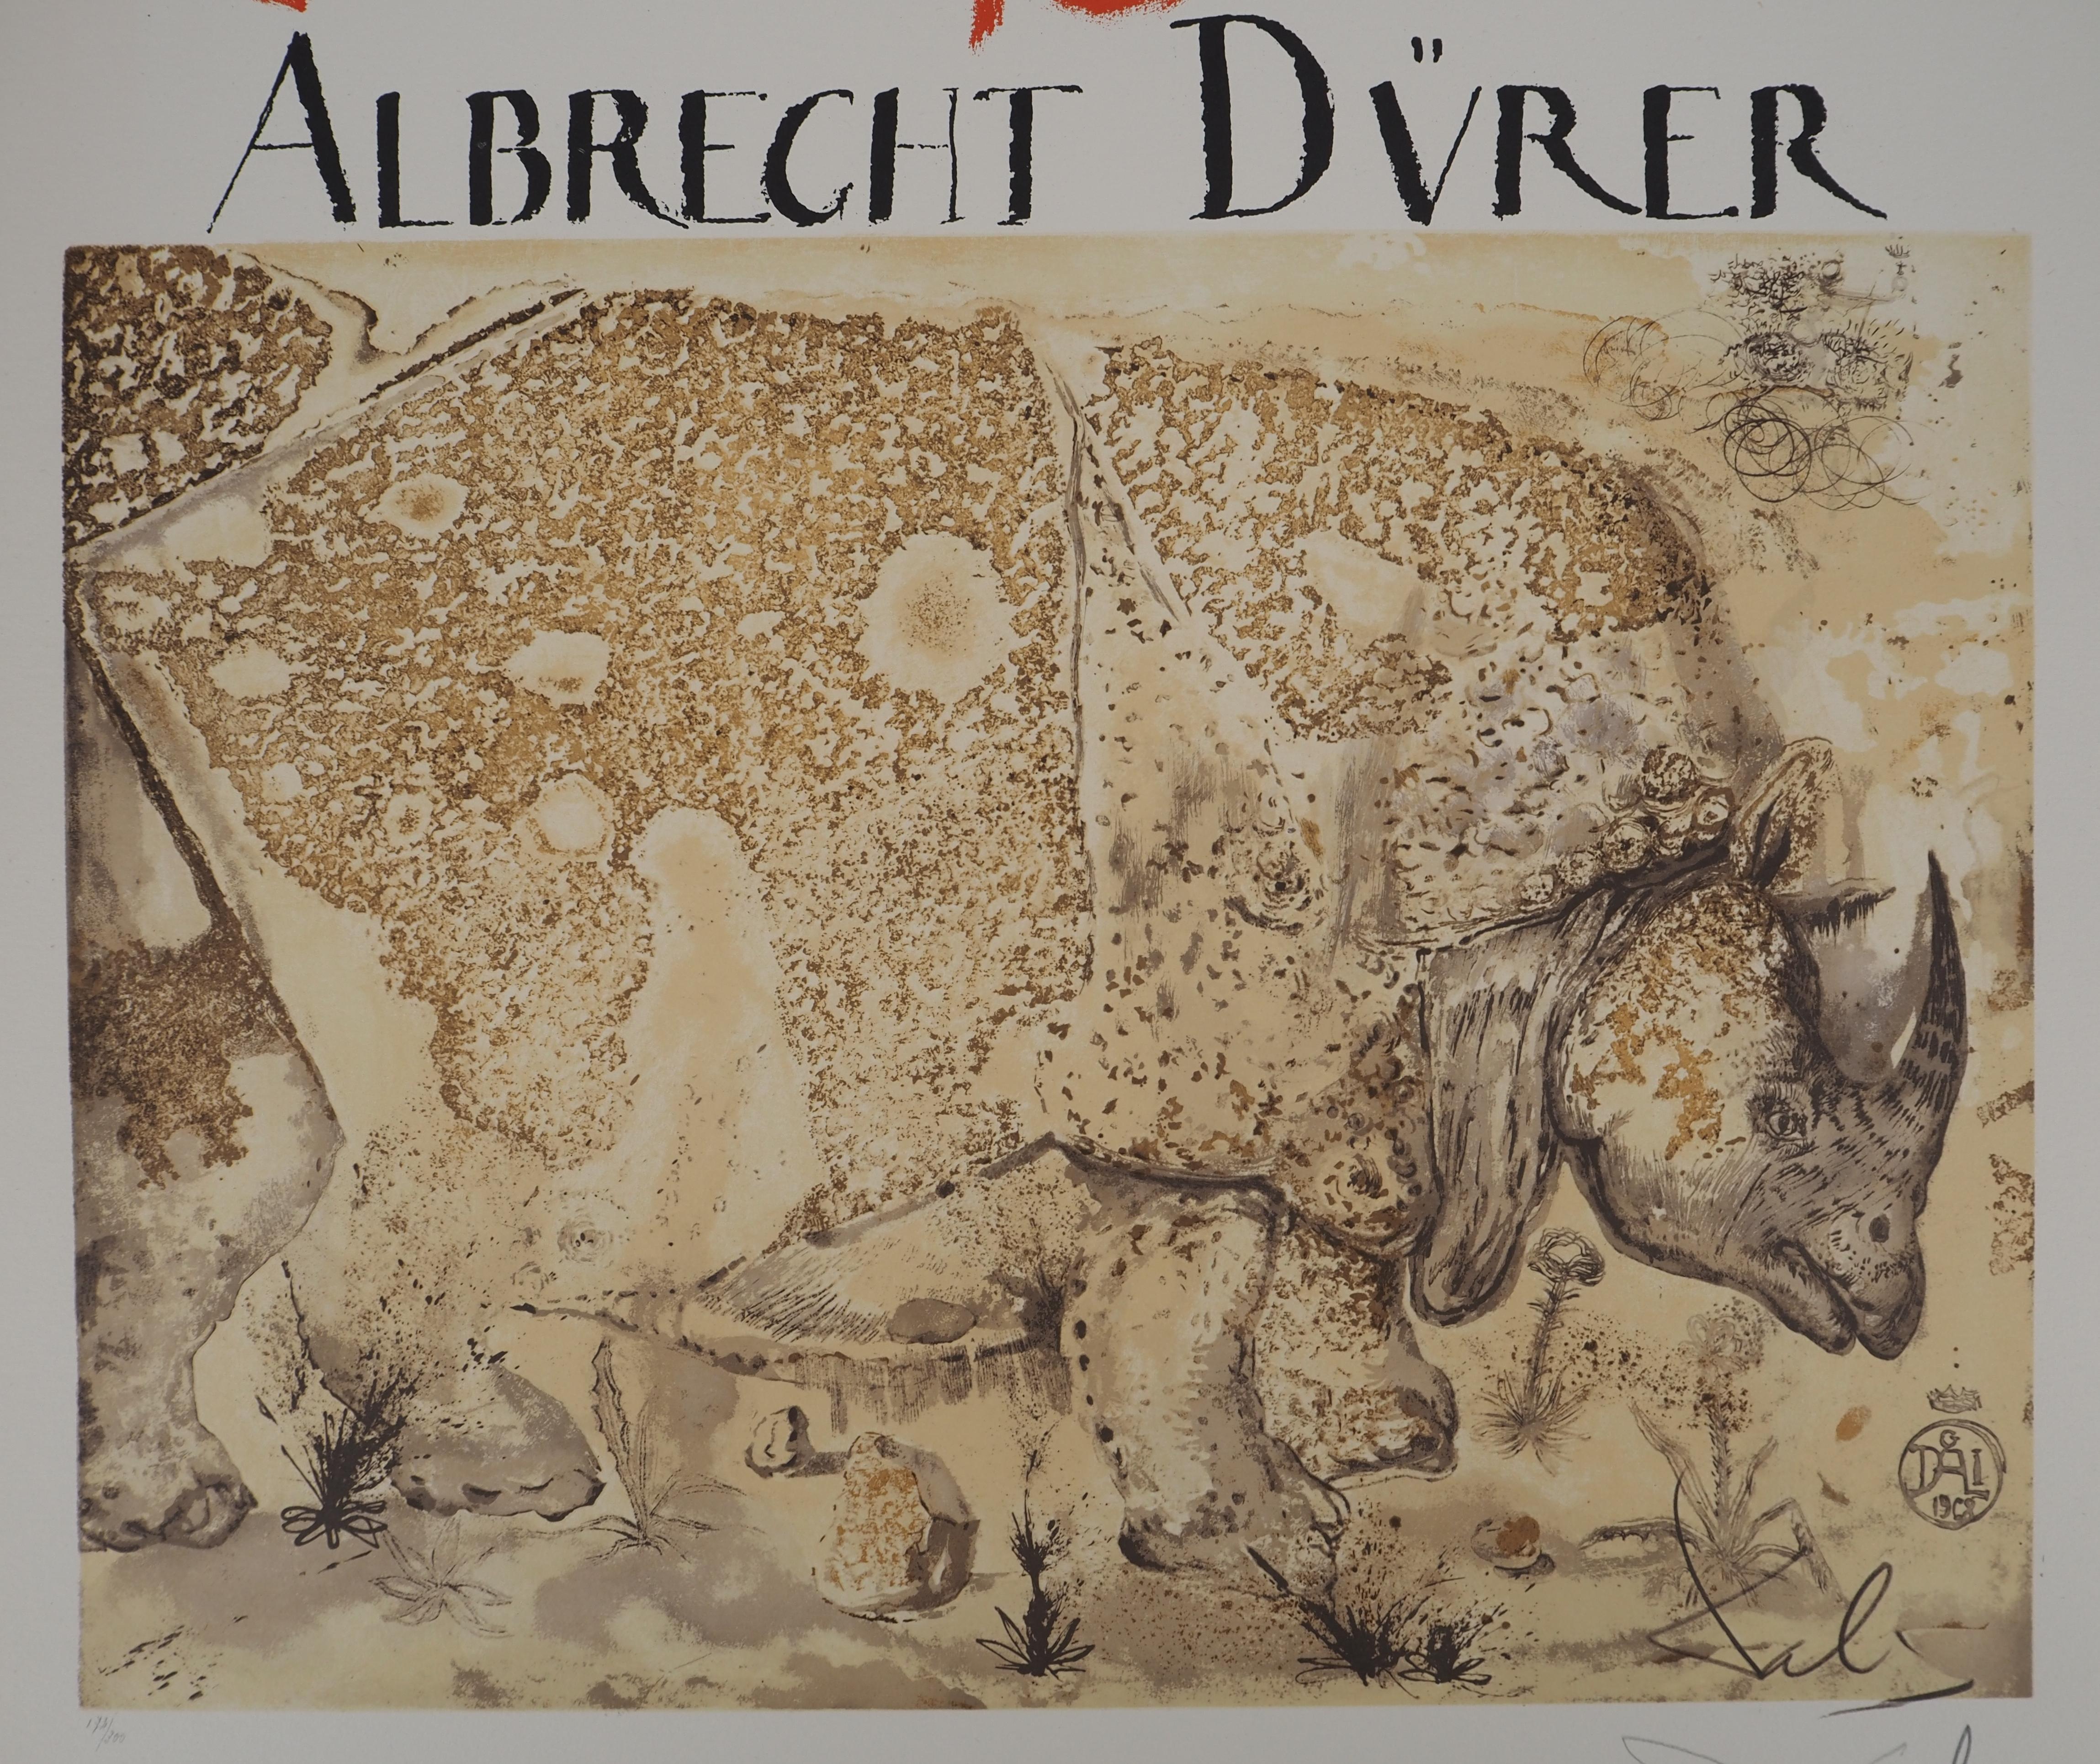 Rhinoceros, Tribute to Albrecht DURER - Signed lithograph poster (Gaspar #1503) - Surrealist Print by Salvador Dalí